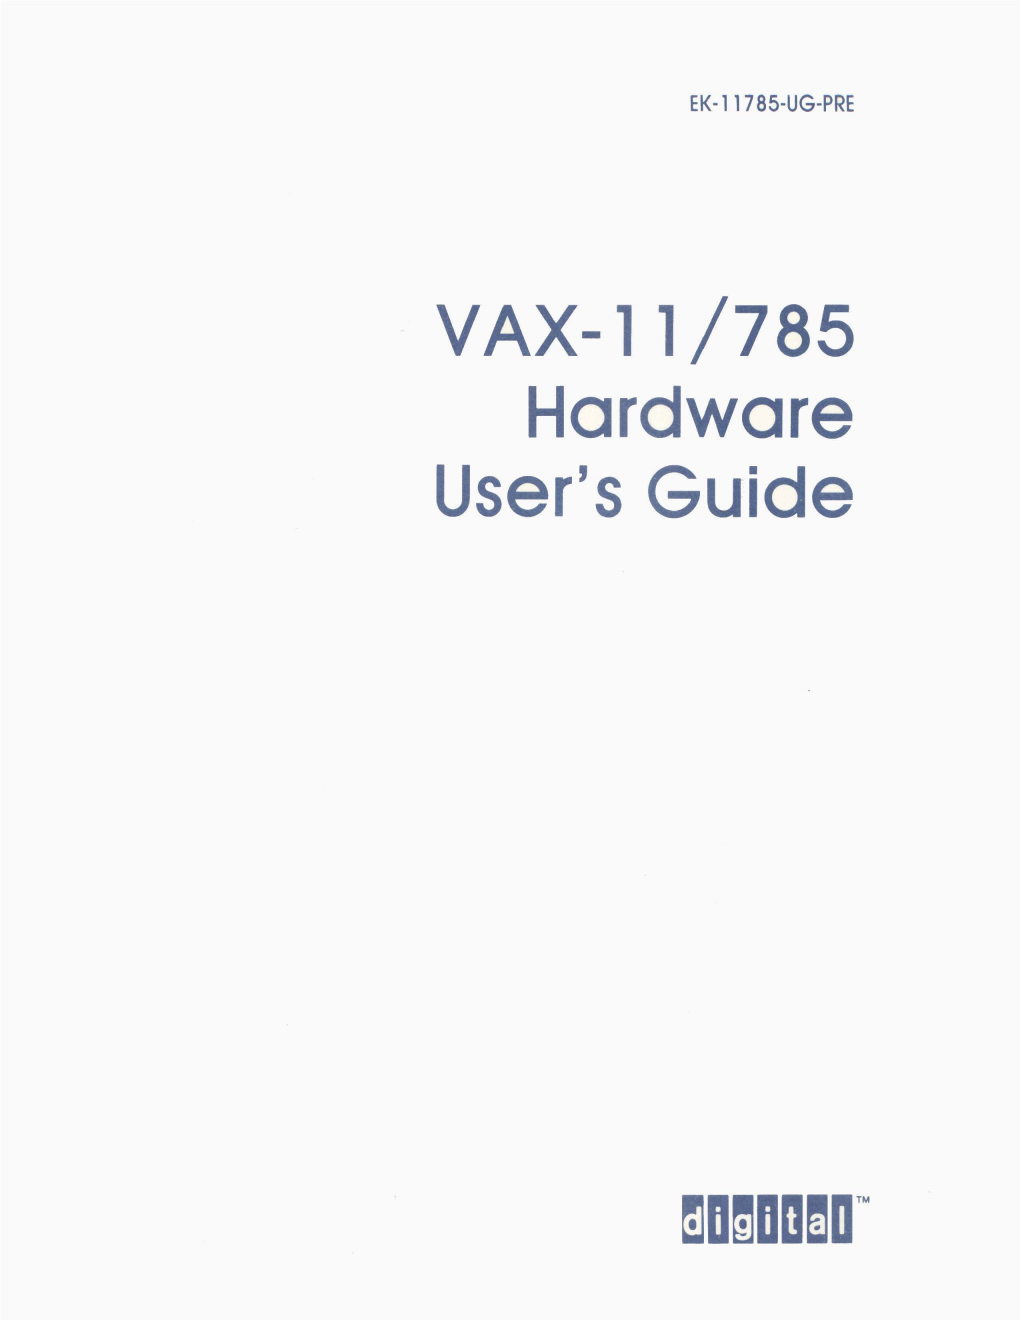 VAX-11/785 Hardware User's Guide EK-11785-UG-PRE